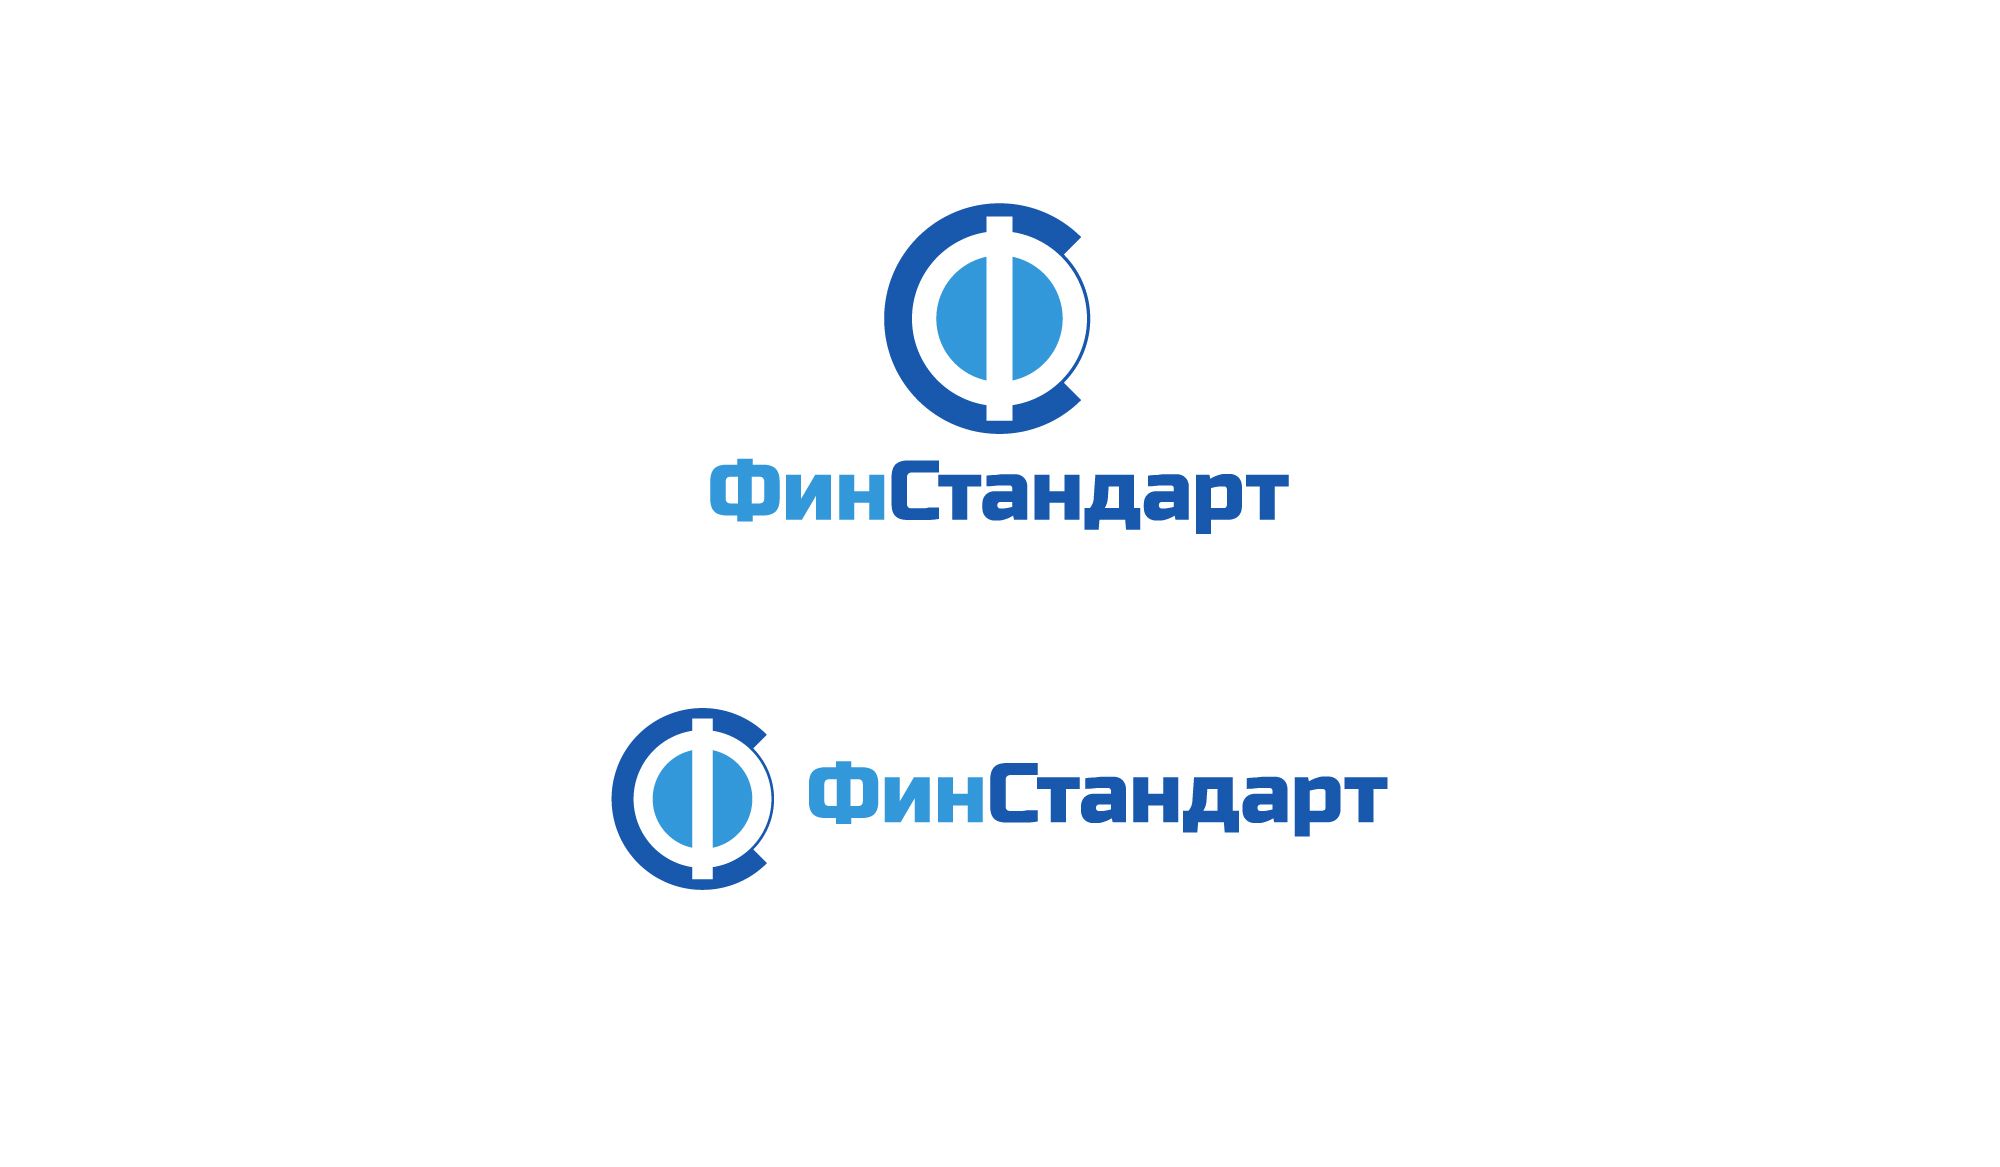 Лого и ФС для ФинСтандарт - дизайнер mz777